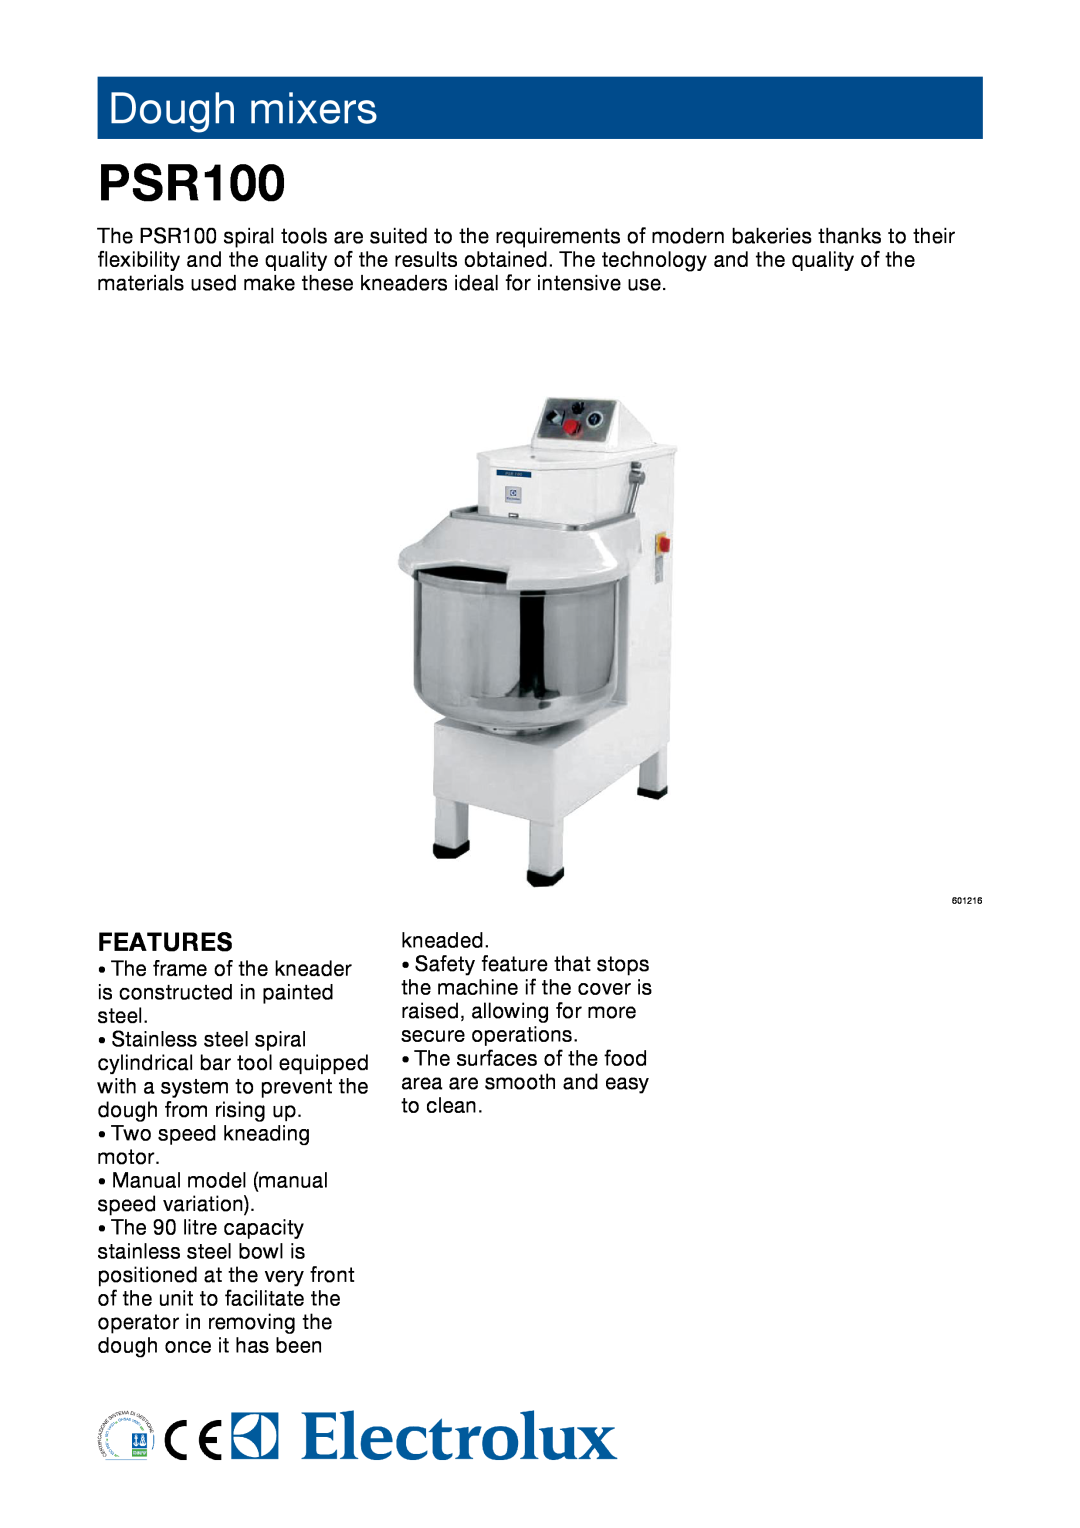 Electrolux PSR100 manual Dough mixers, Features 